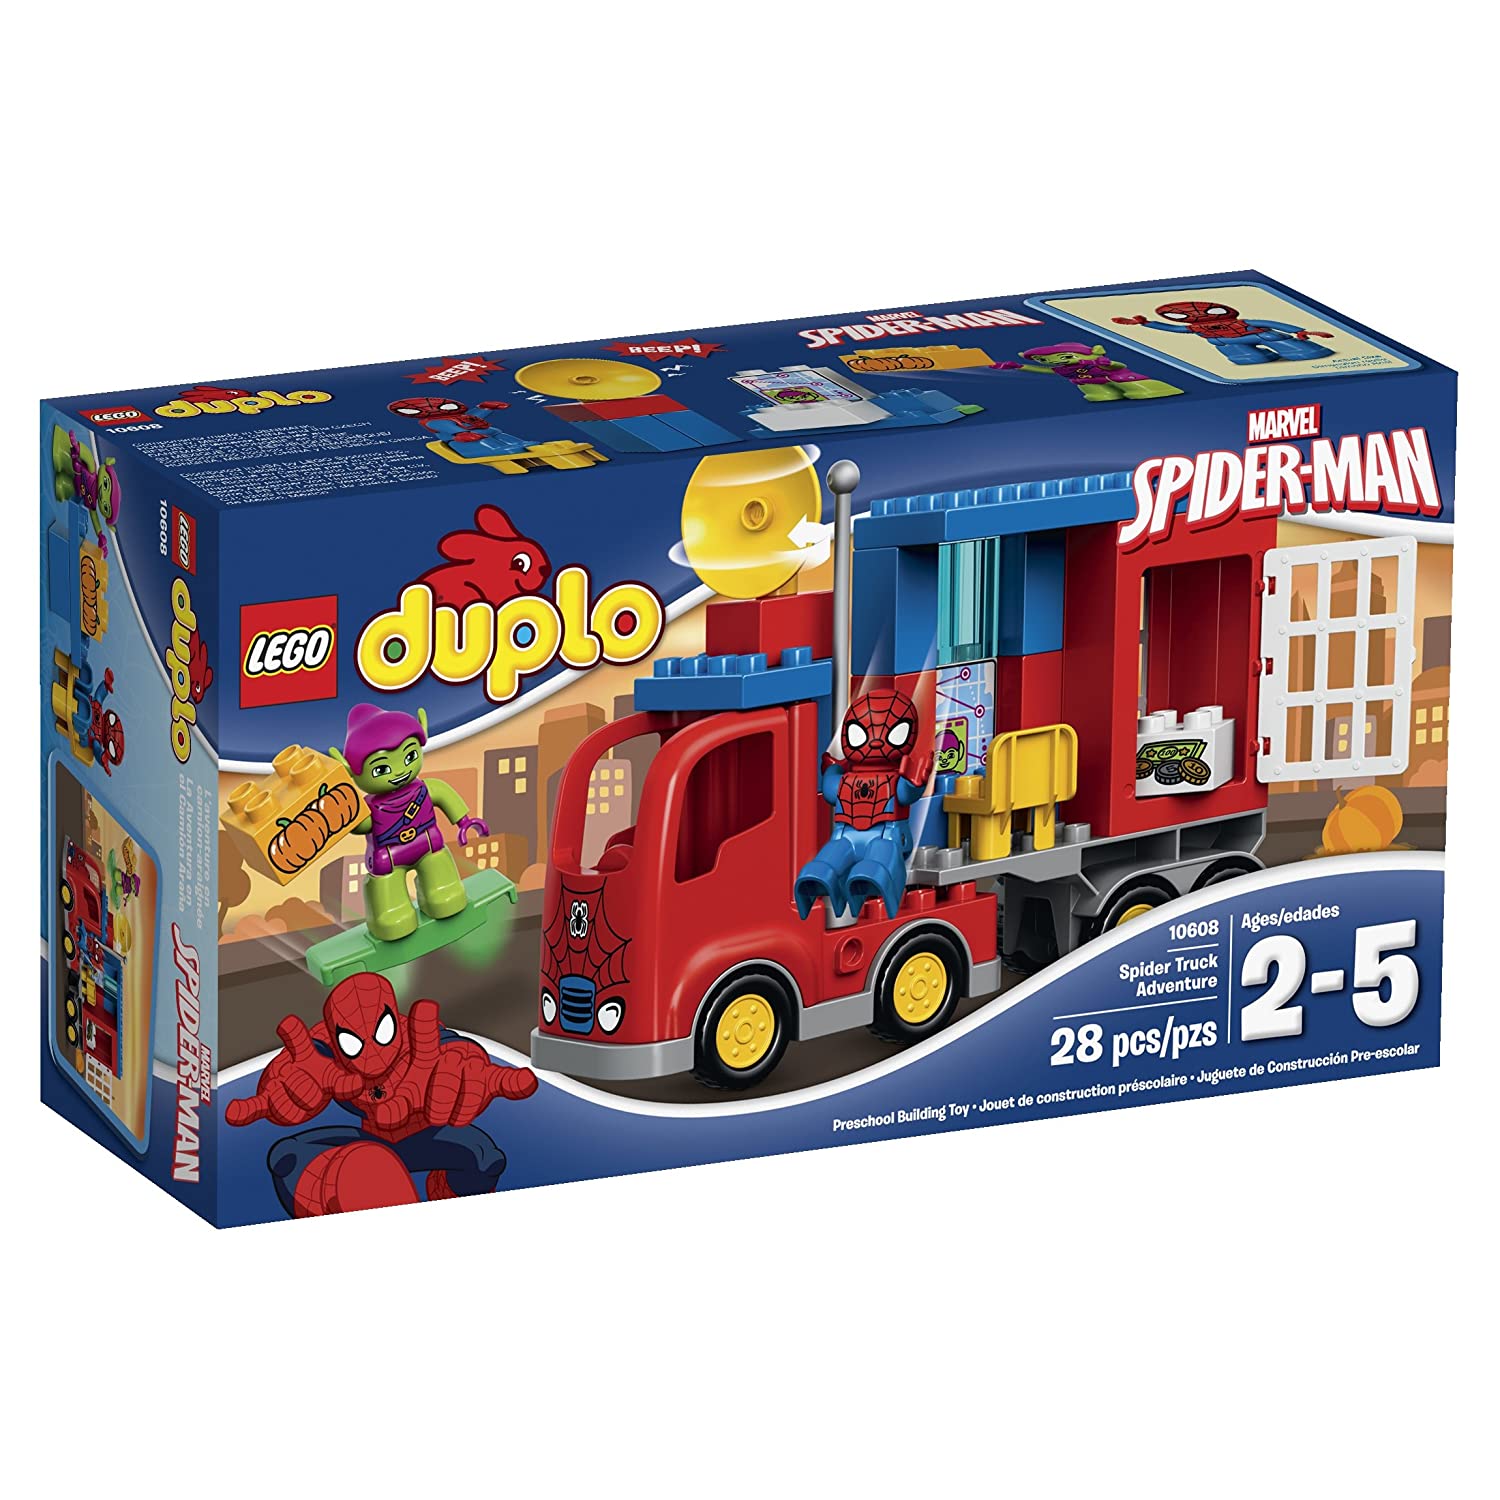 LEGO DUPLO Spider-Man Spider Truck Adventure